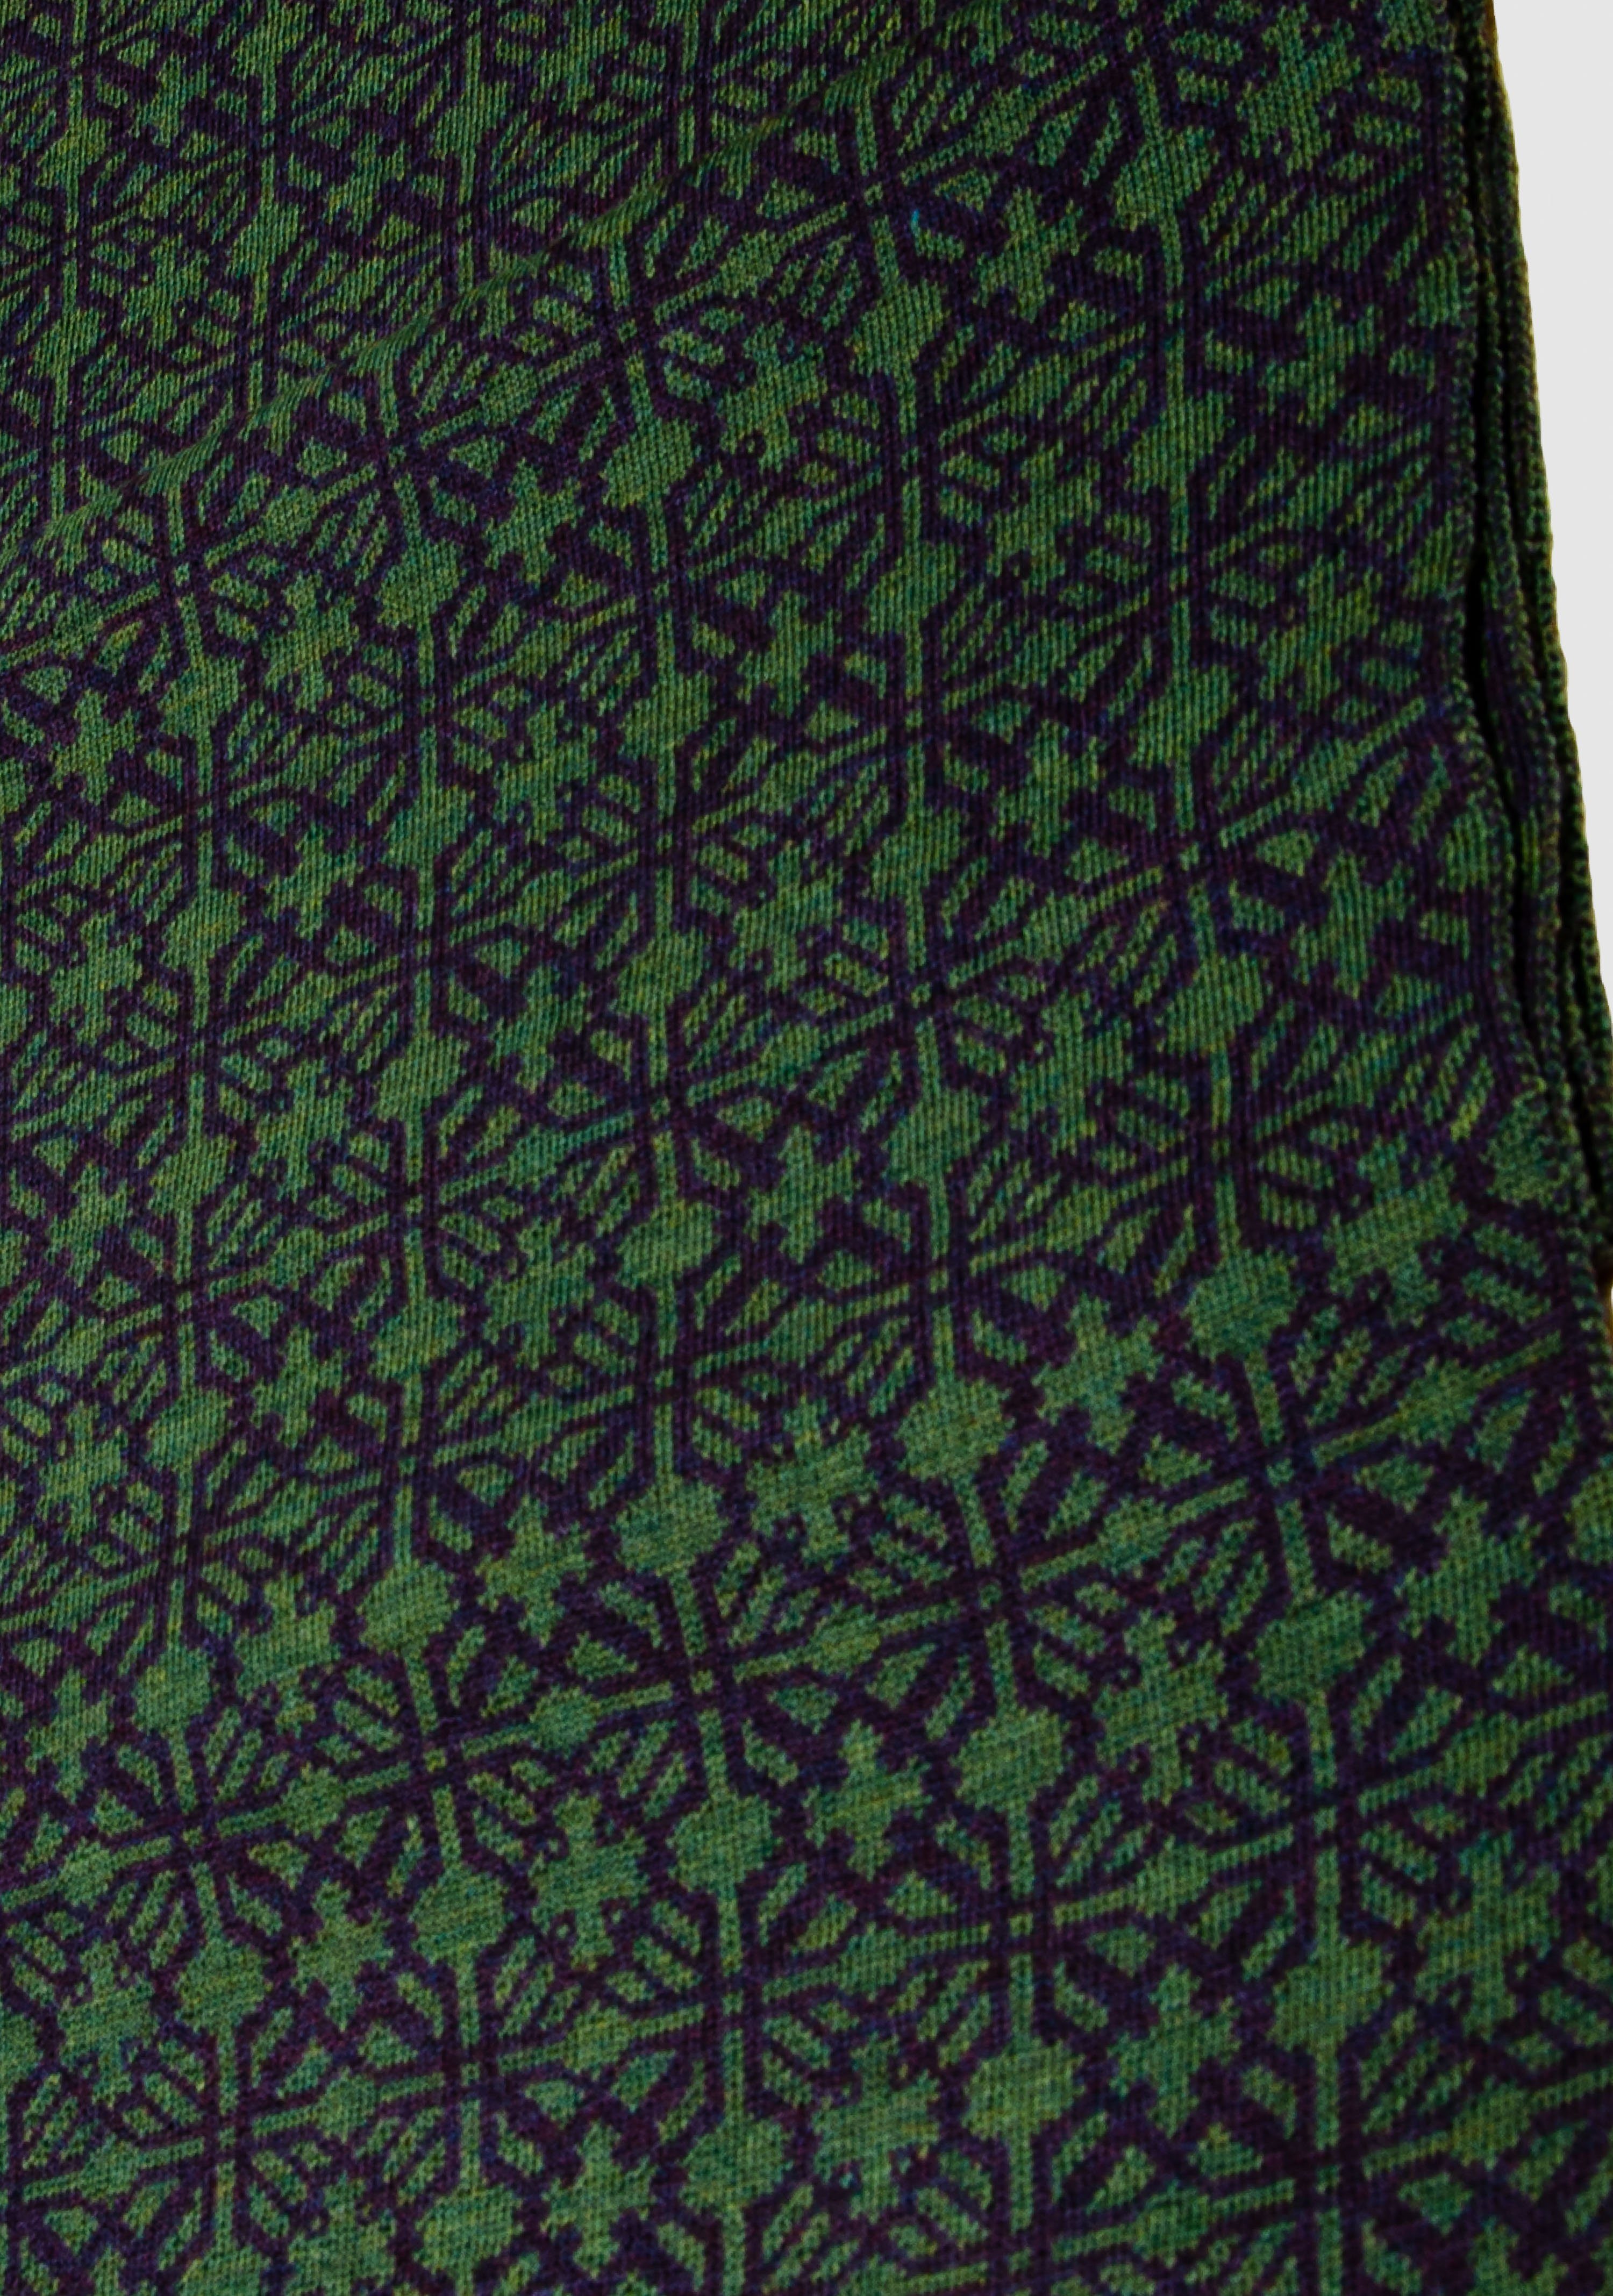 LANARTO slow fashion Wollschal Schal in Farben extrasoft schönen 100% Irland purpur_schilf Merino